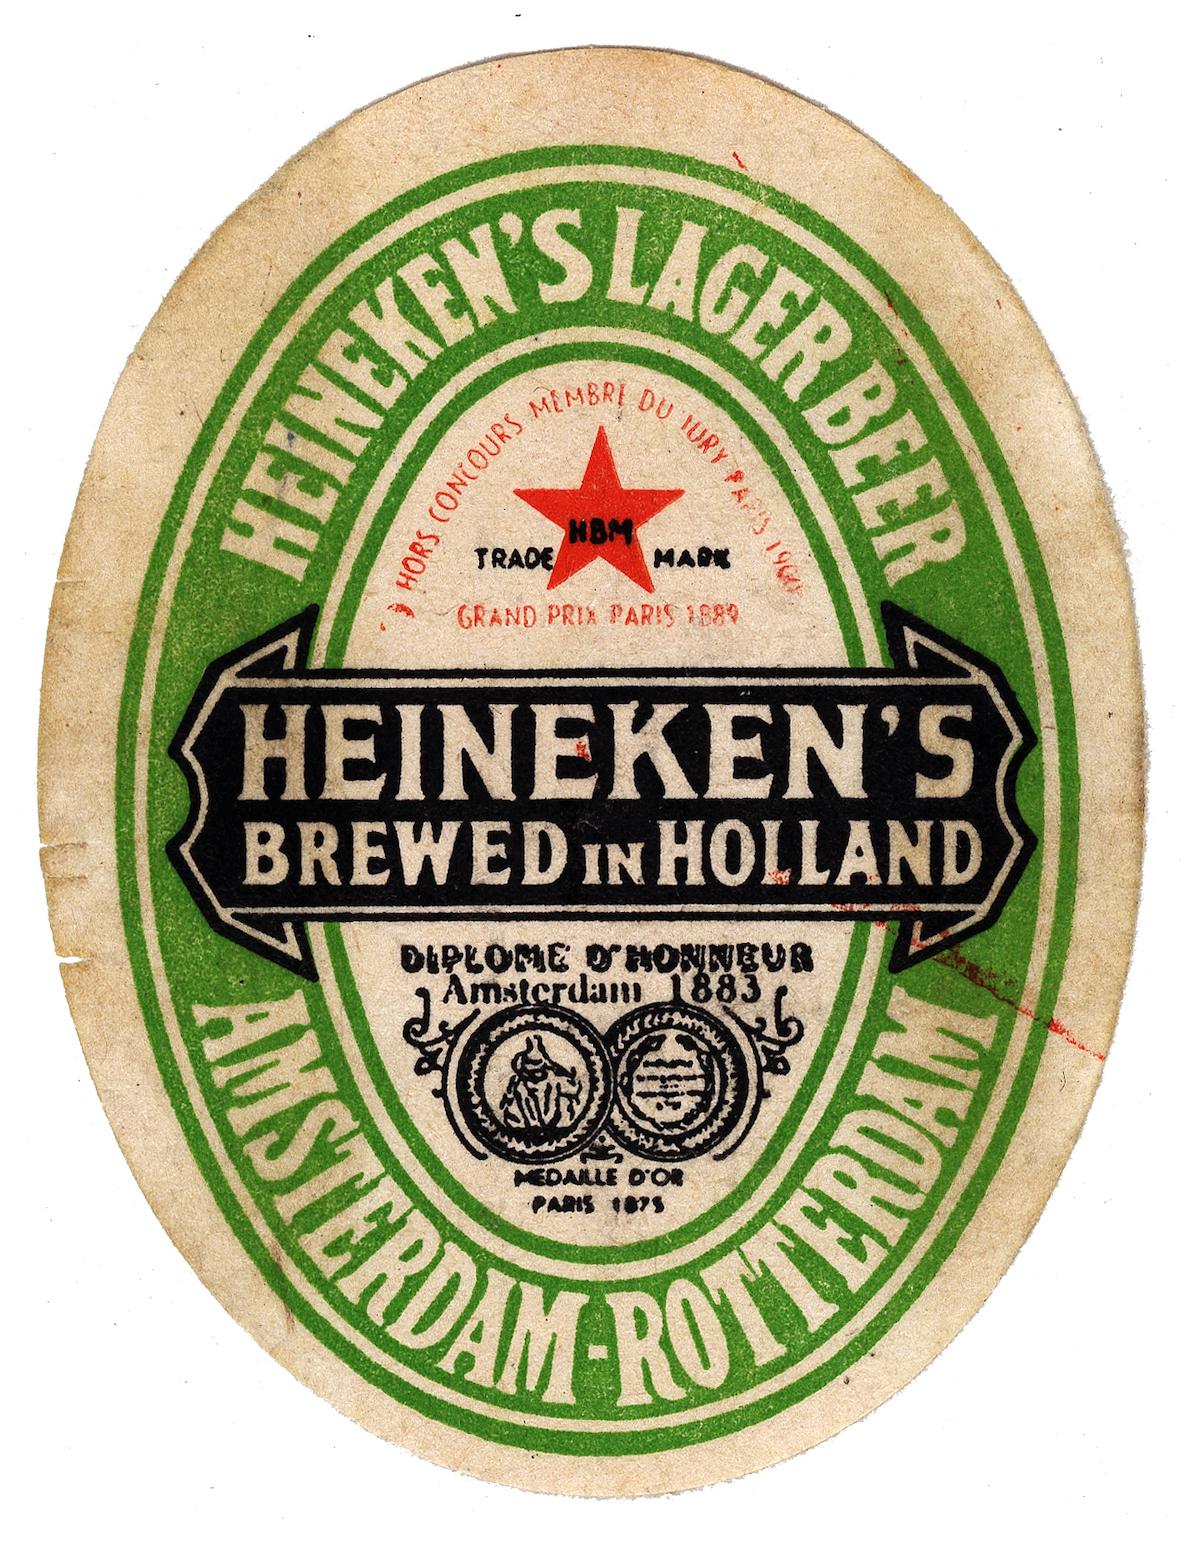 The Heineken Label Heineken Collection Foundation